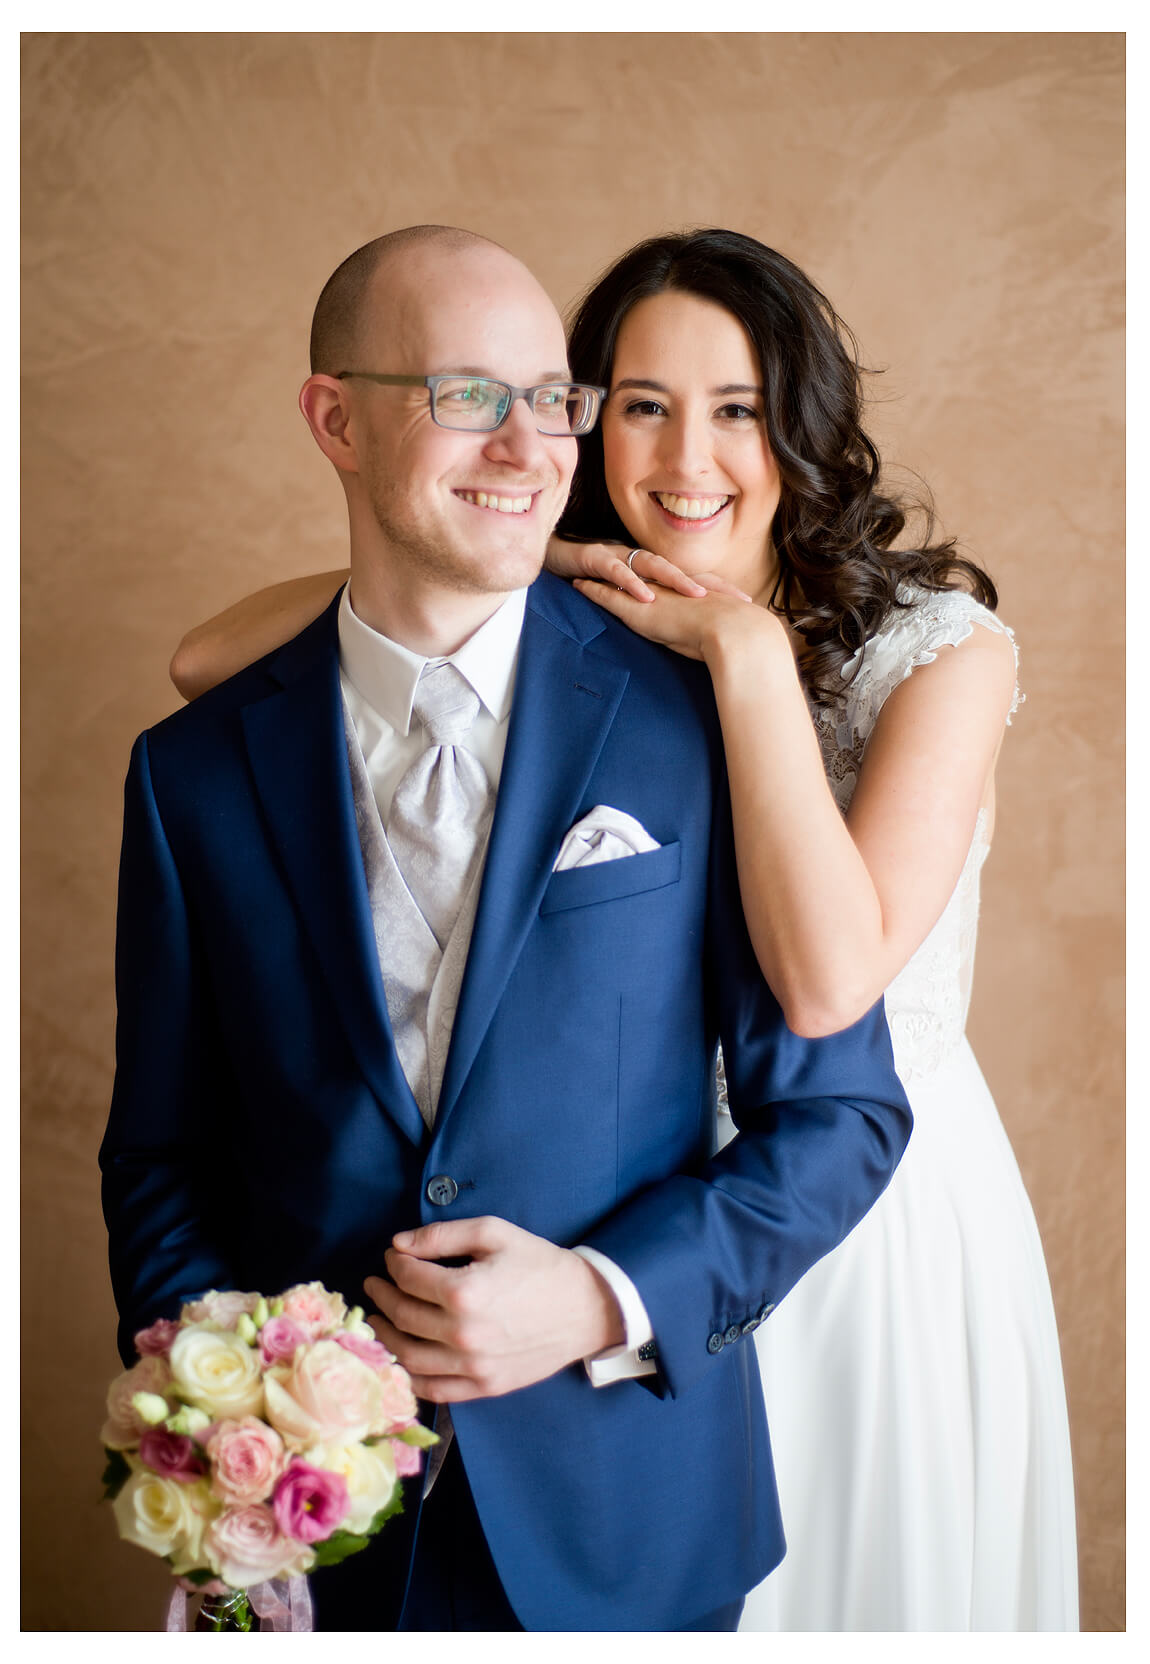 Ein glückliches Brautpaar posiert für ein Foto vor einer braunen Wand, Bräutigam hält Blumenstrauss in der rechten Hand